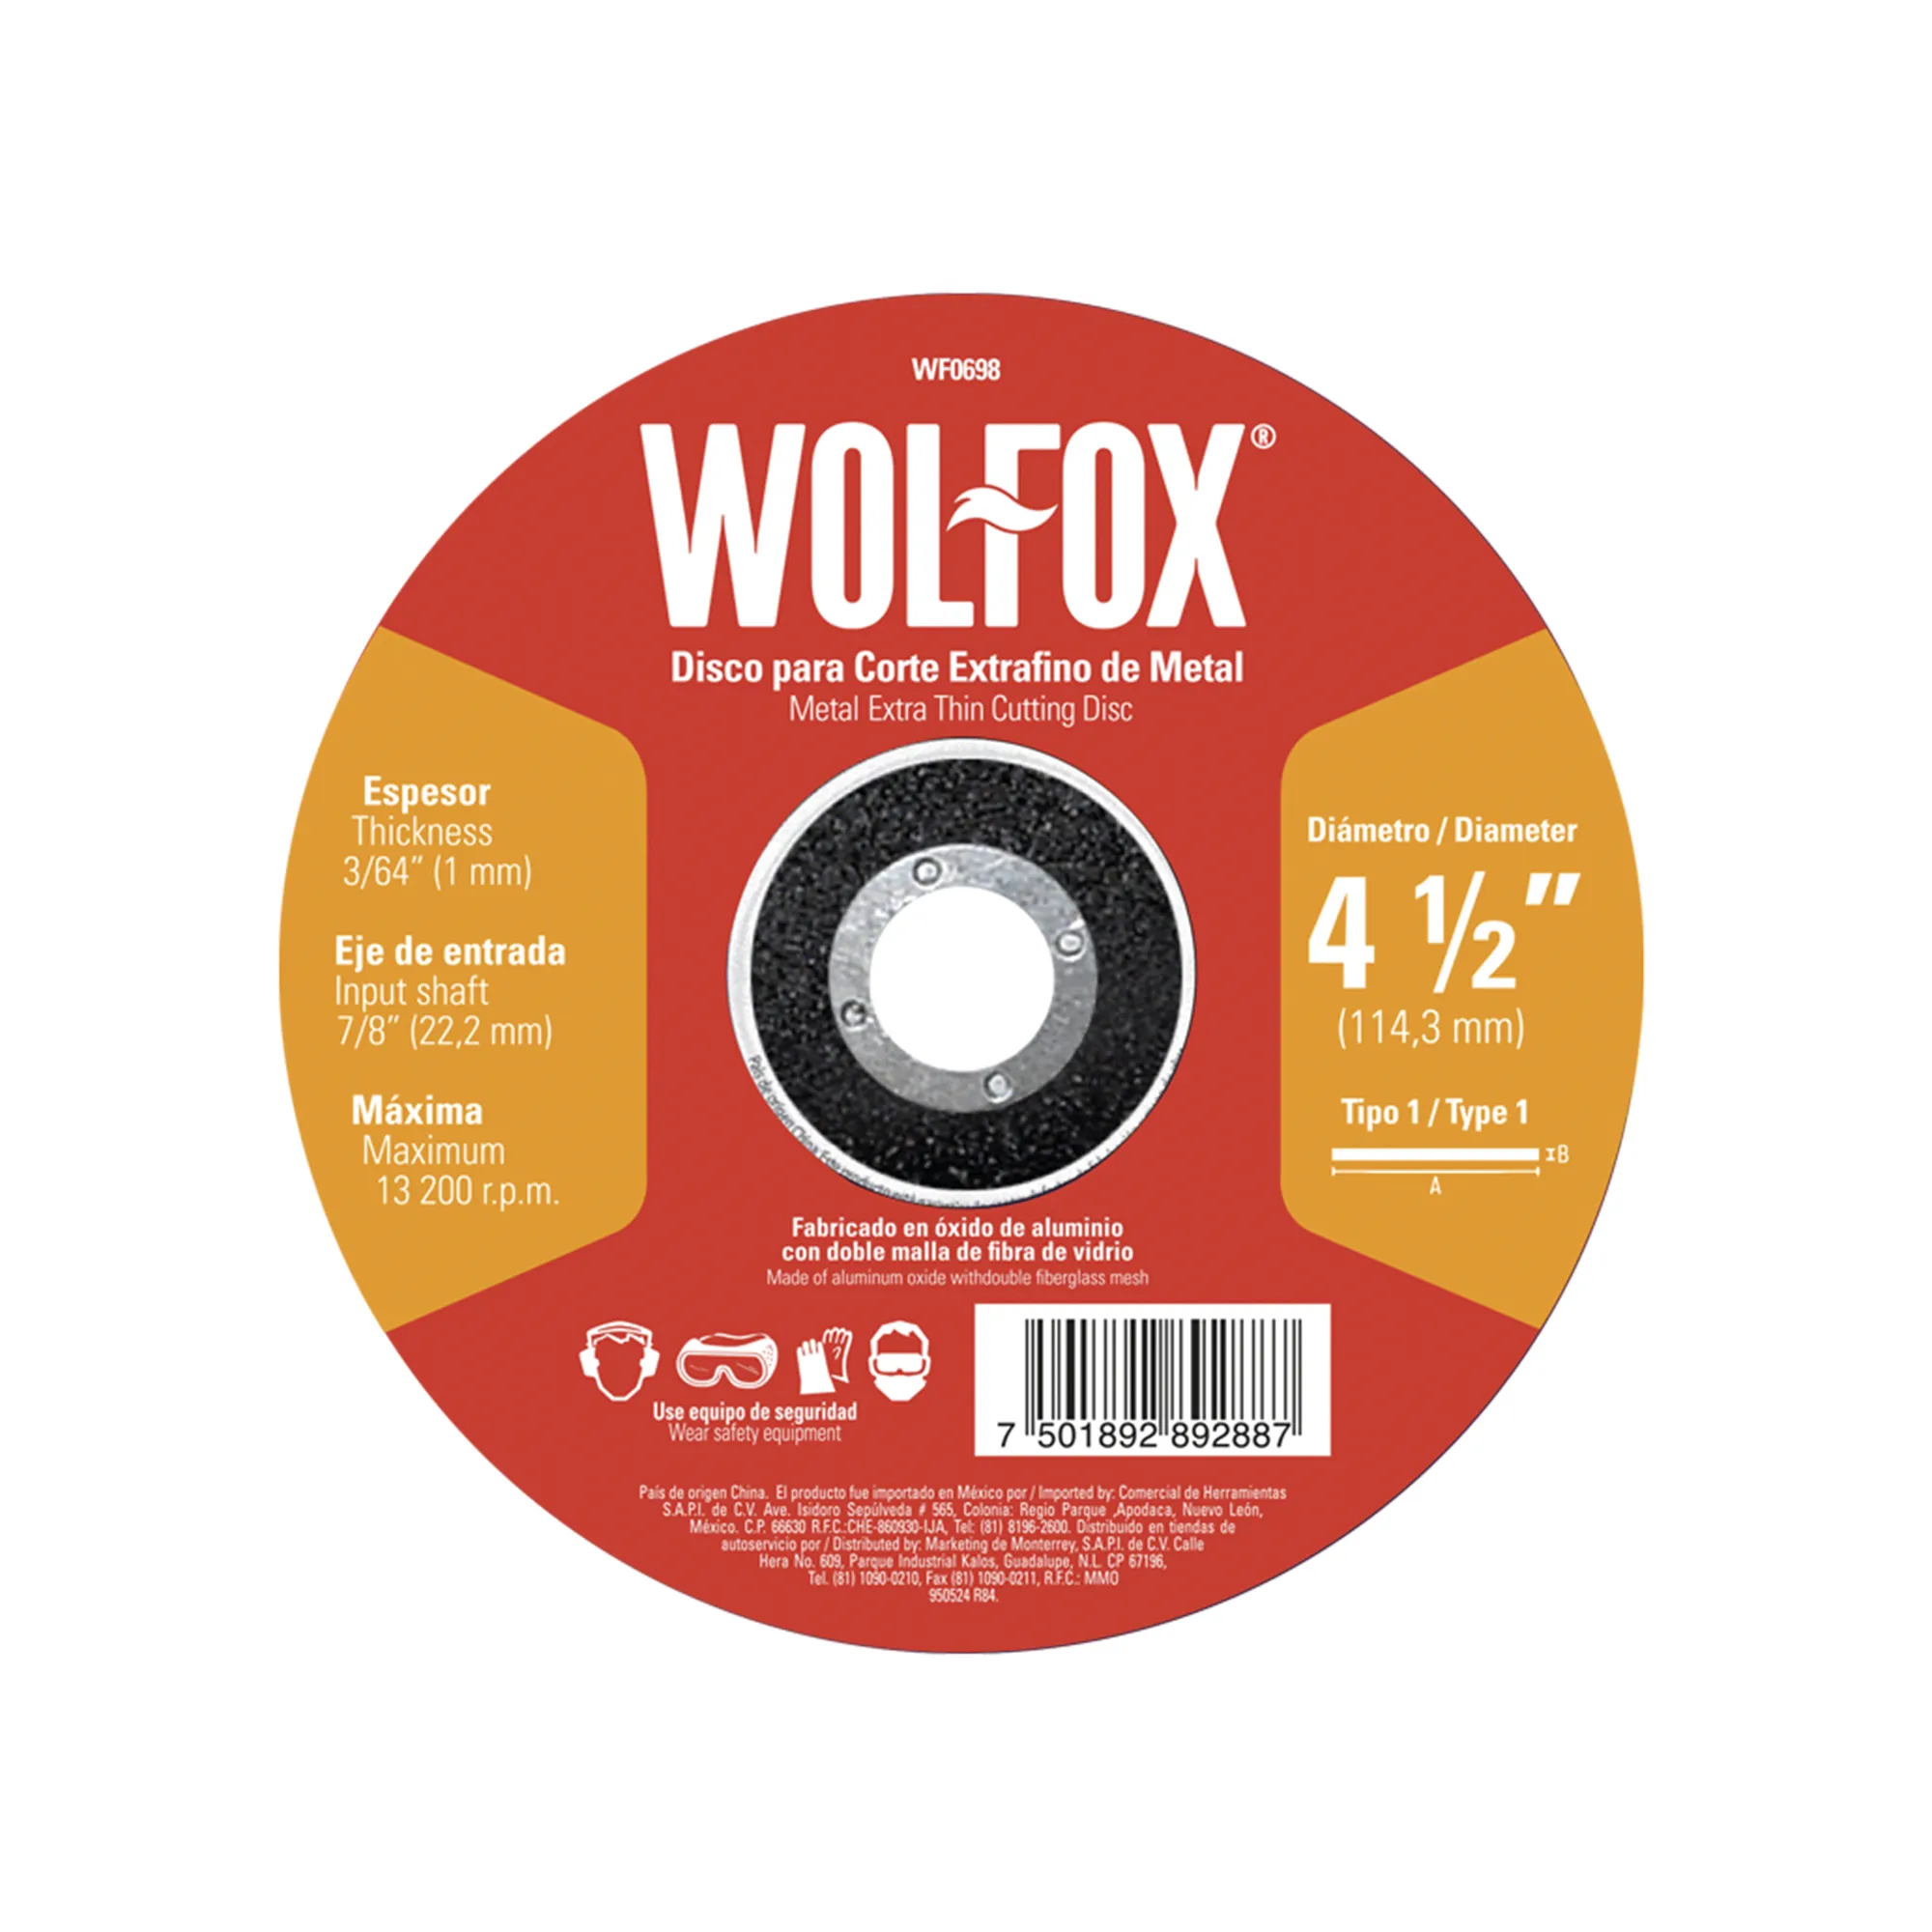 Disco Corte Extrafino De Metal 4.1/2" Wolfox De 1 Mm